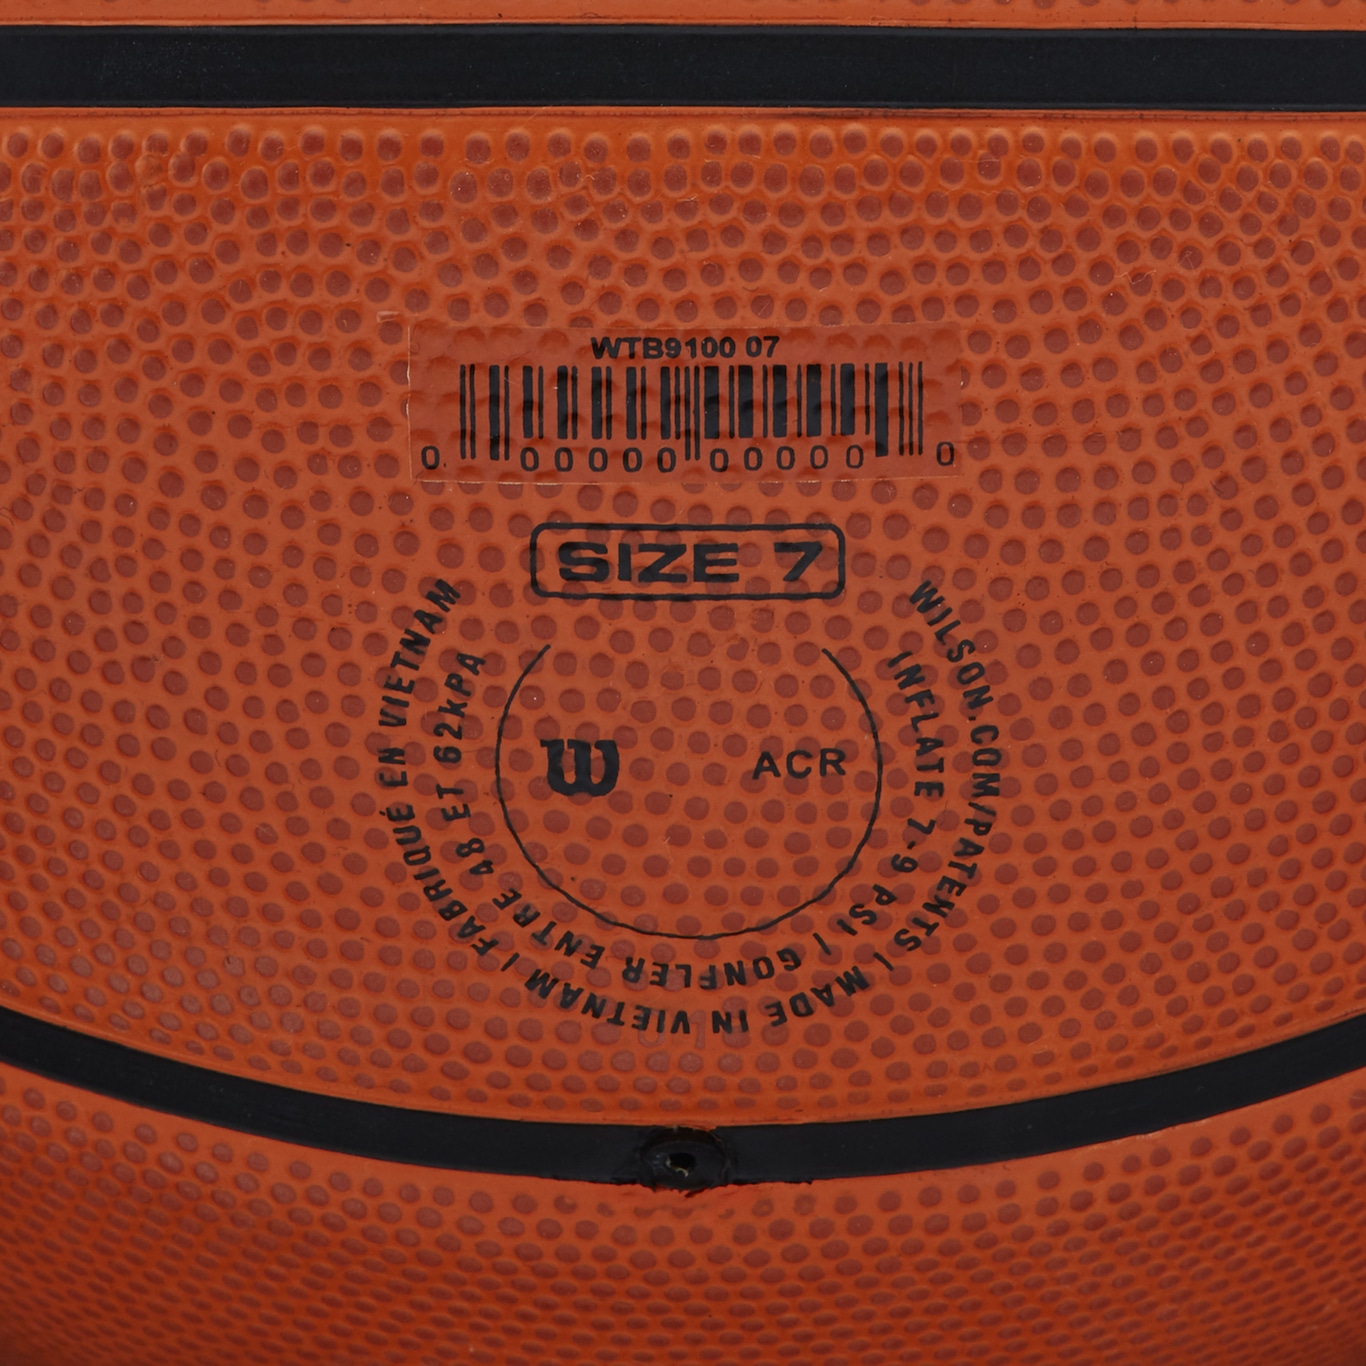 Bola de basquete wilson - Esportes e ginástica - Casa Caiada, Olinda  1249062201